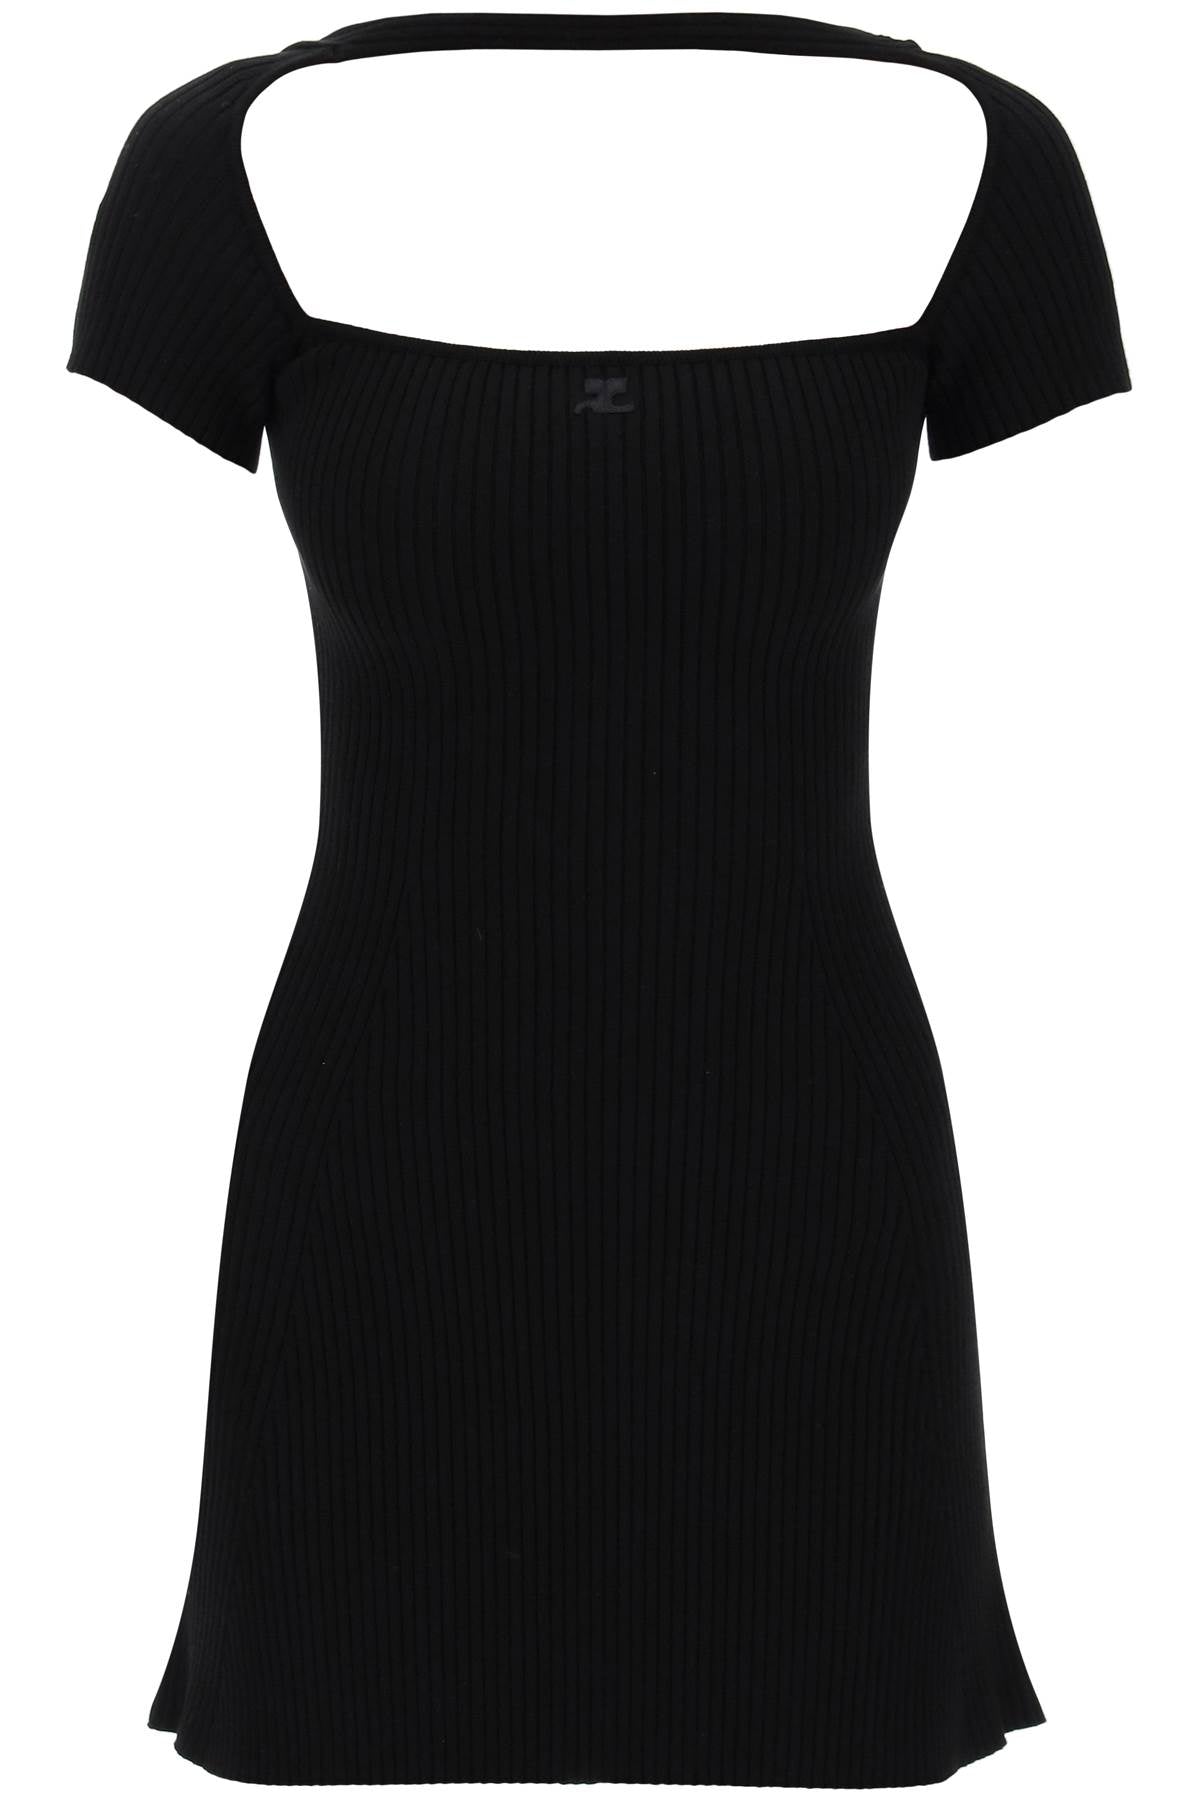 Đầm thun dáng xòe màu đen cho nữ - Logo thêu tone-sur-tone